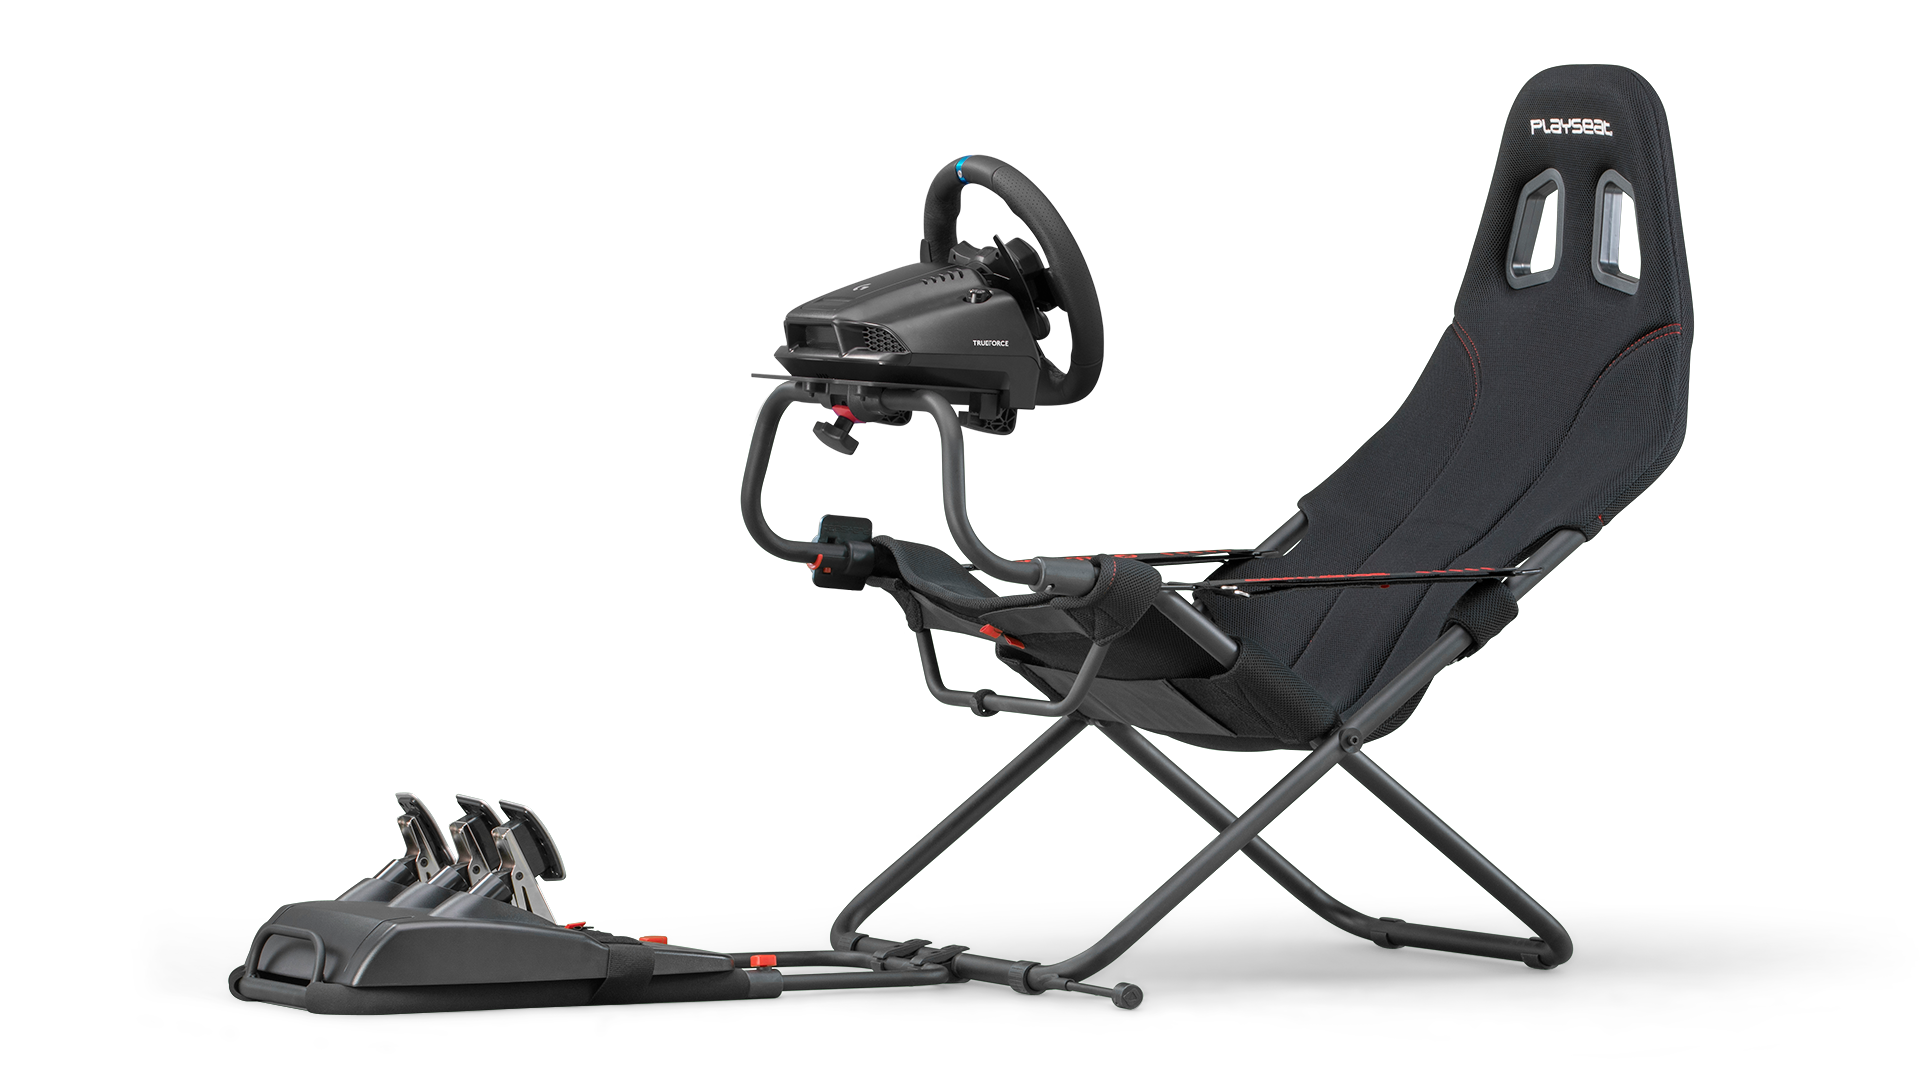 Playseat Challenge Racing Seat & Thrustmaster T-GT Racing Wheel